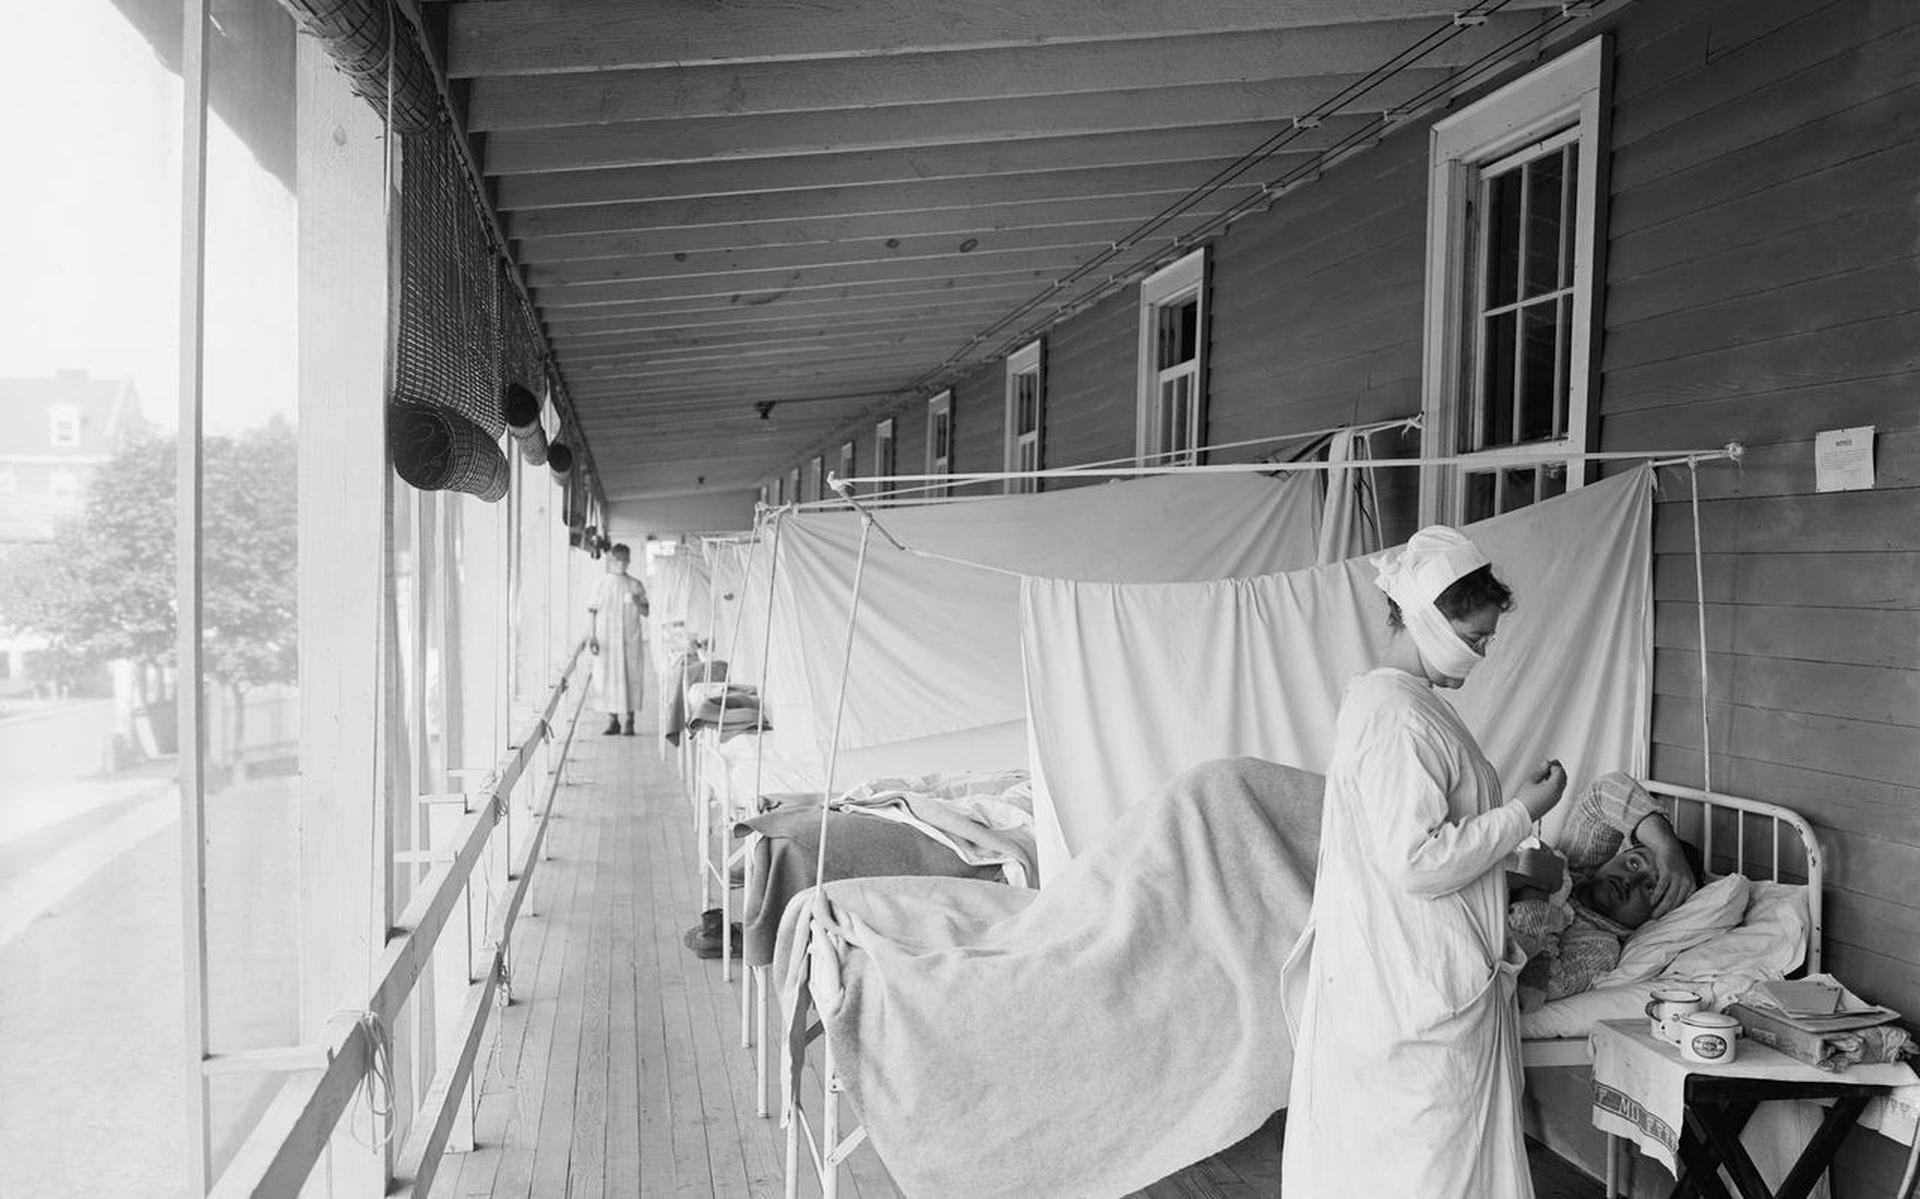 Beeld van de verpleging van patiënten tijdens de Spaanse griep-epidemie.